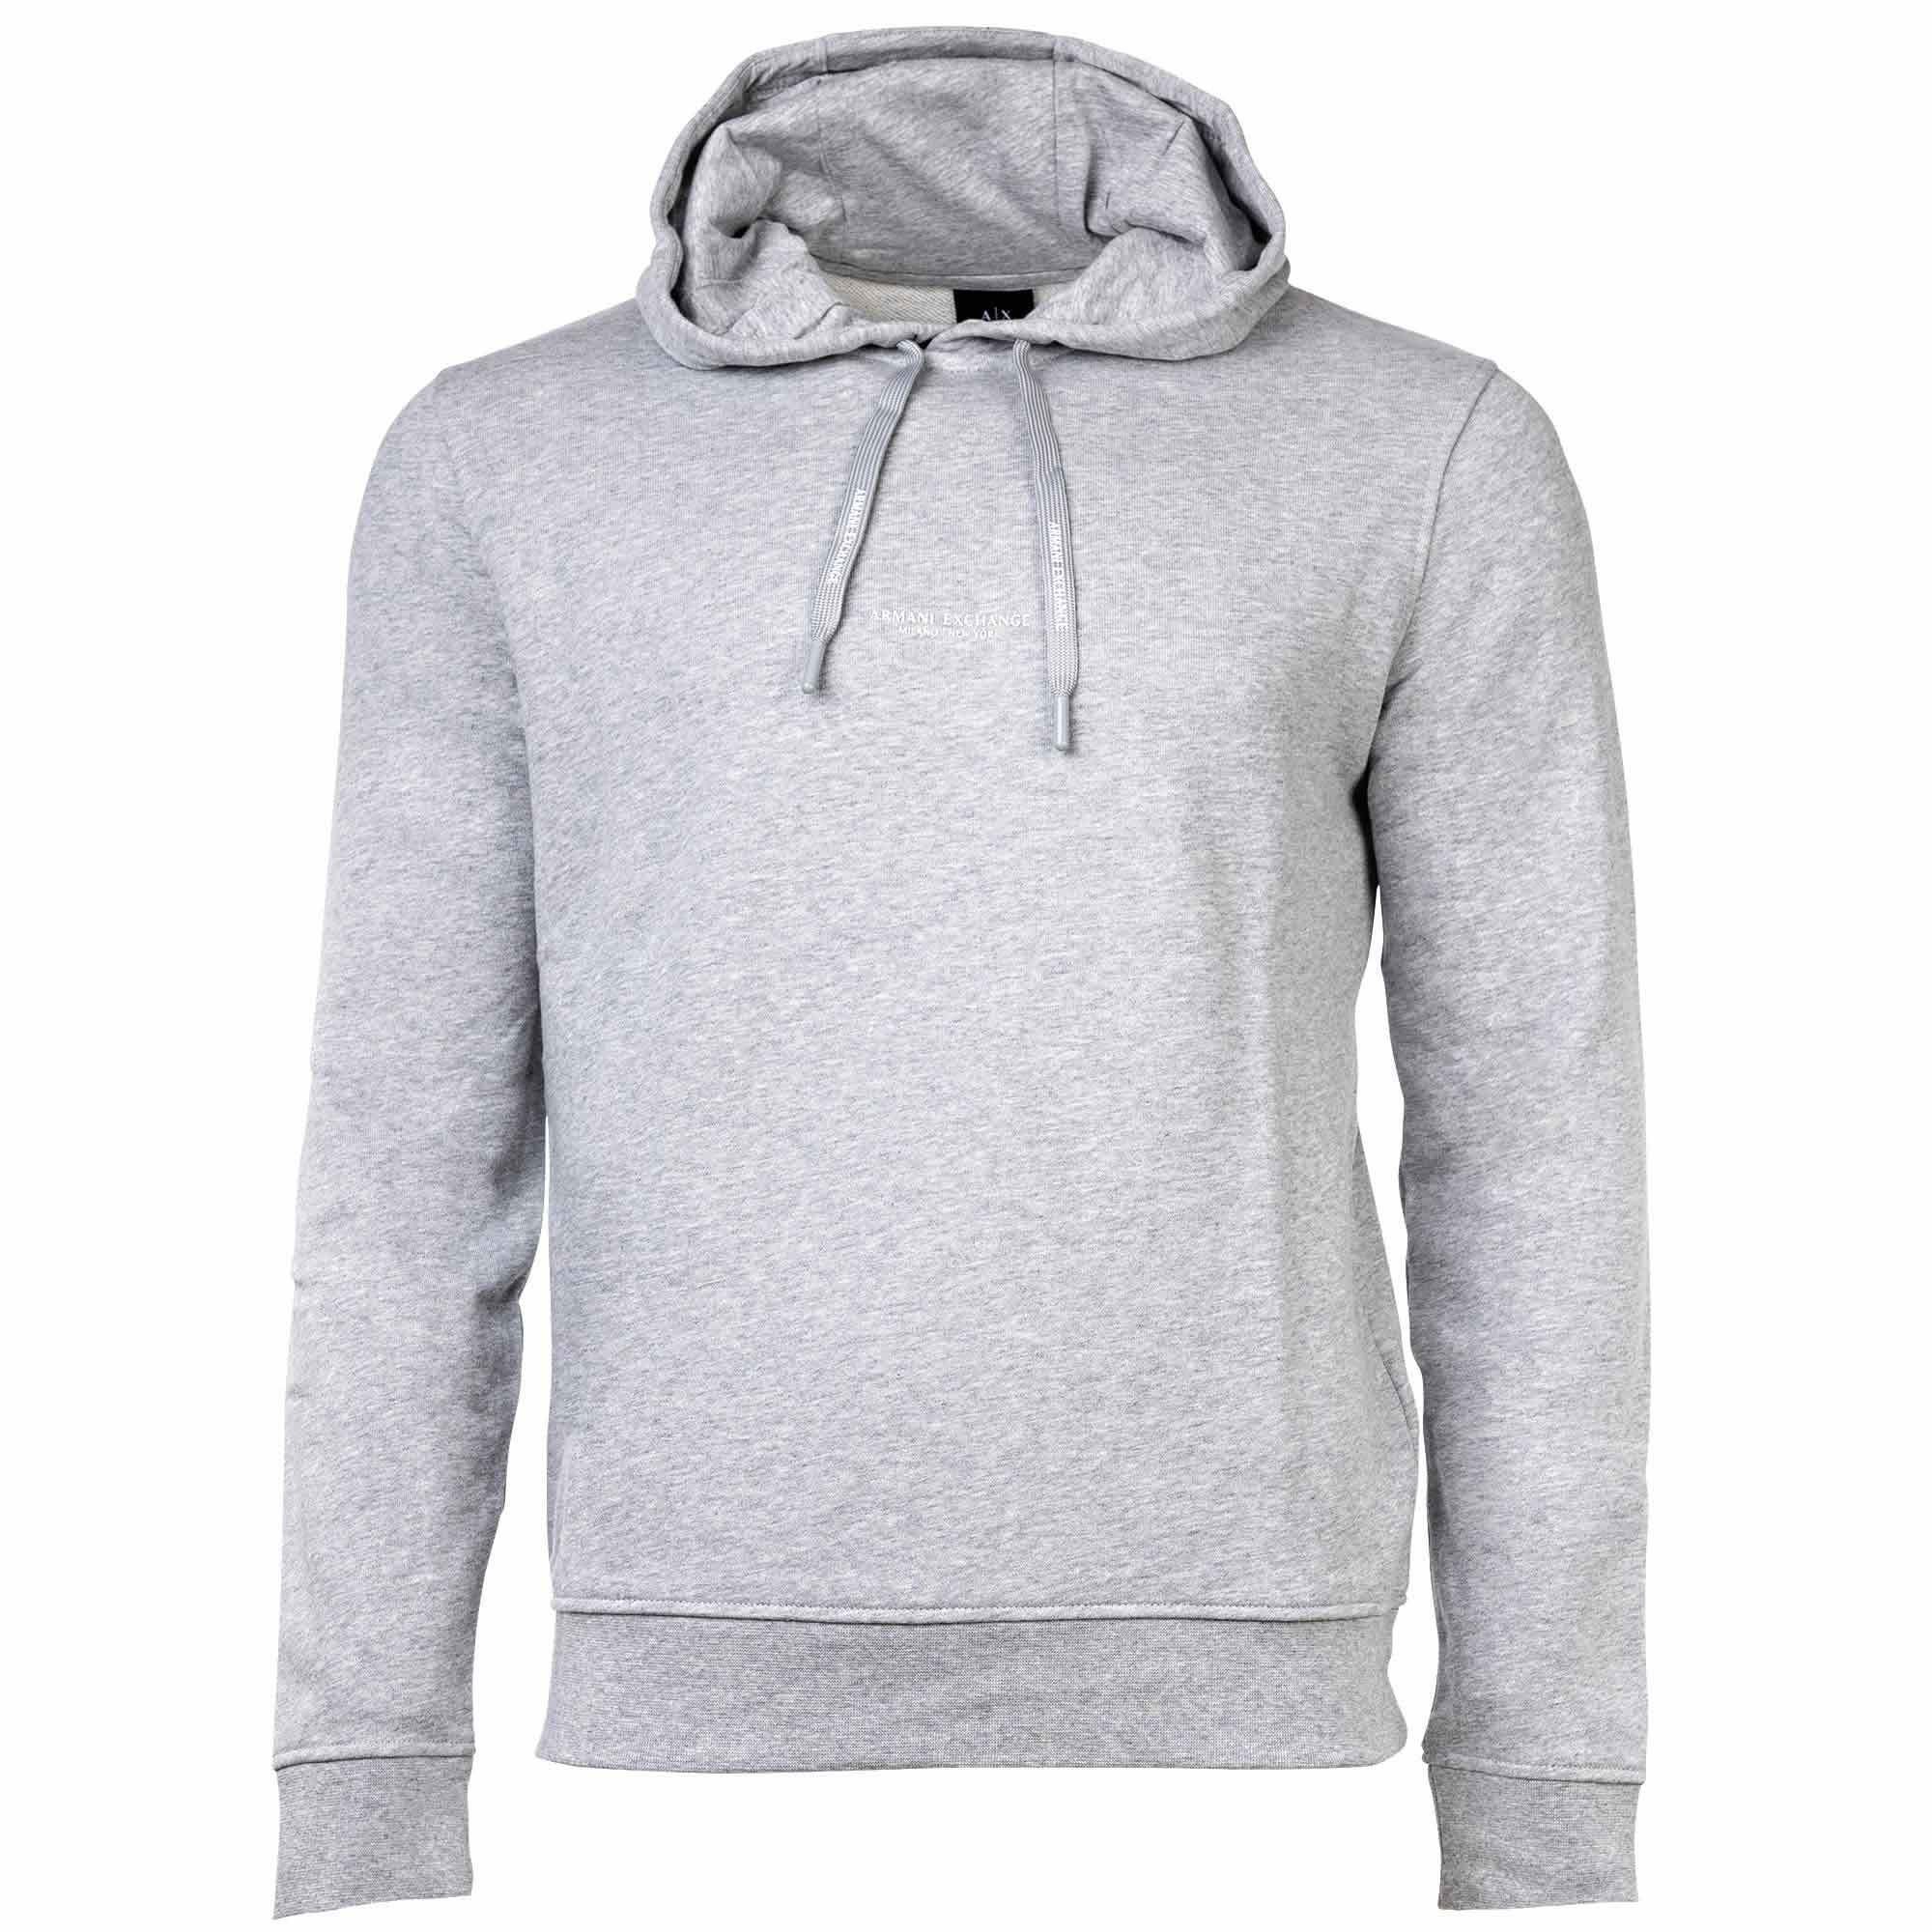 ARMANI EXCHANGE Sweatshirt Grau Sweatshirt Kapuze, meliert Logo, Hoodie, - Herren uni